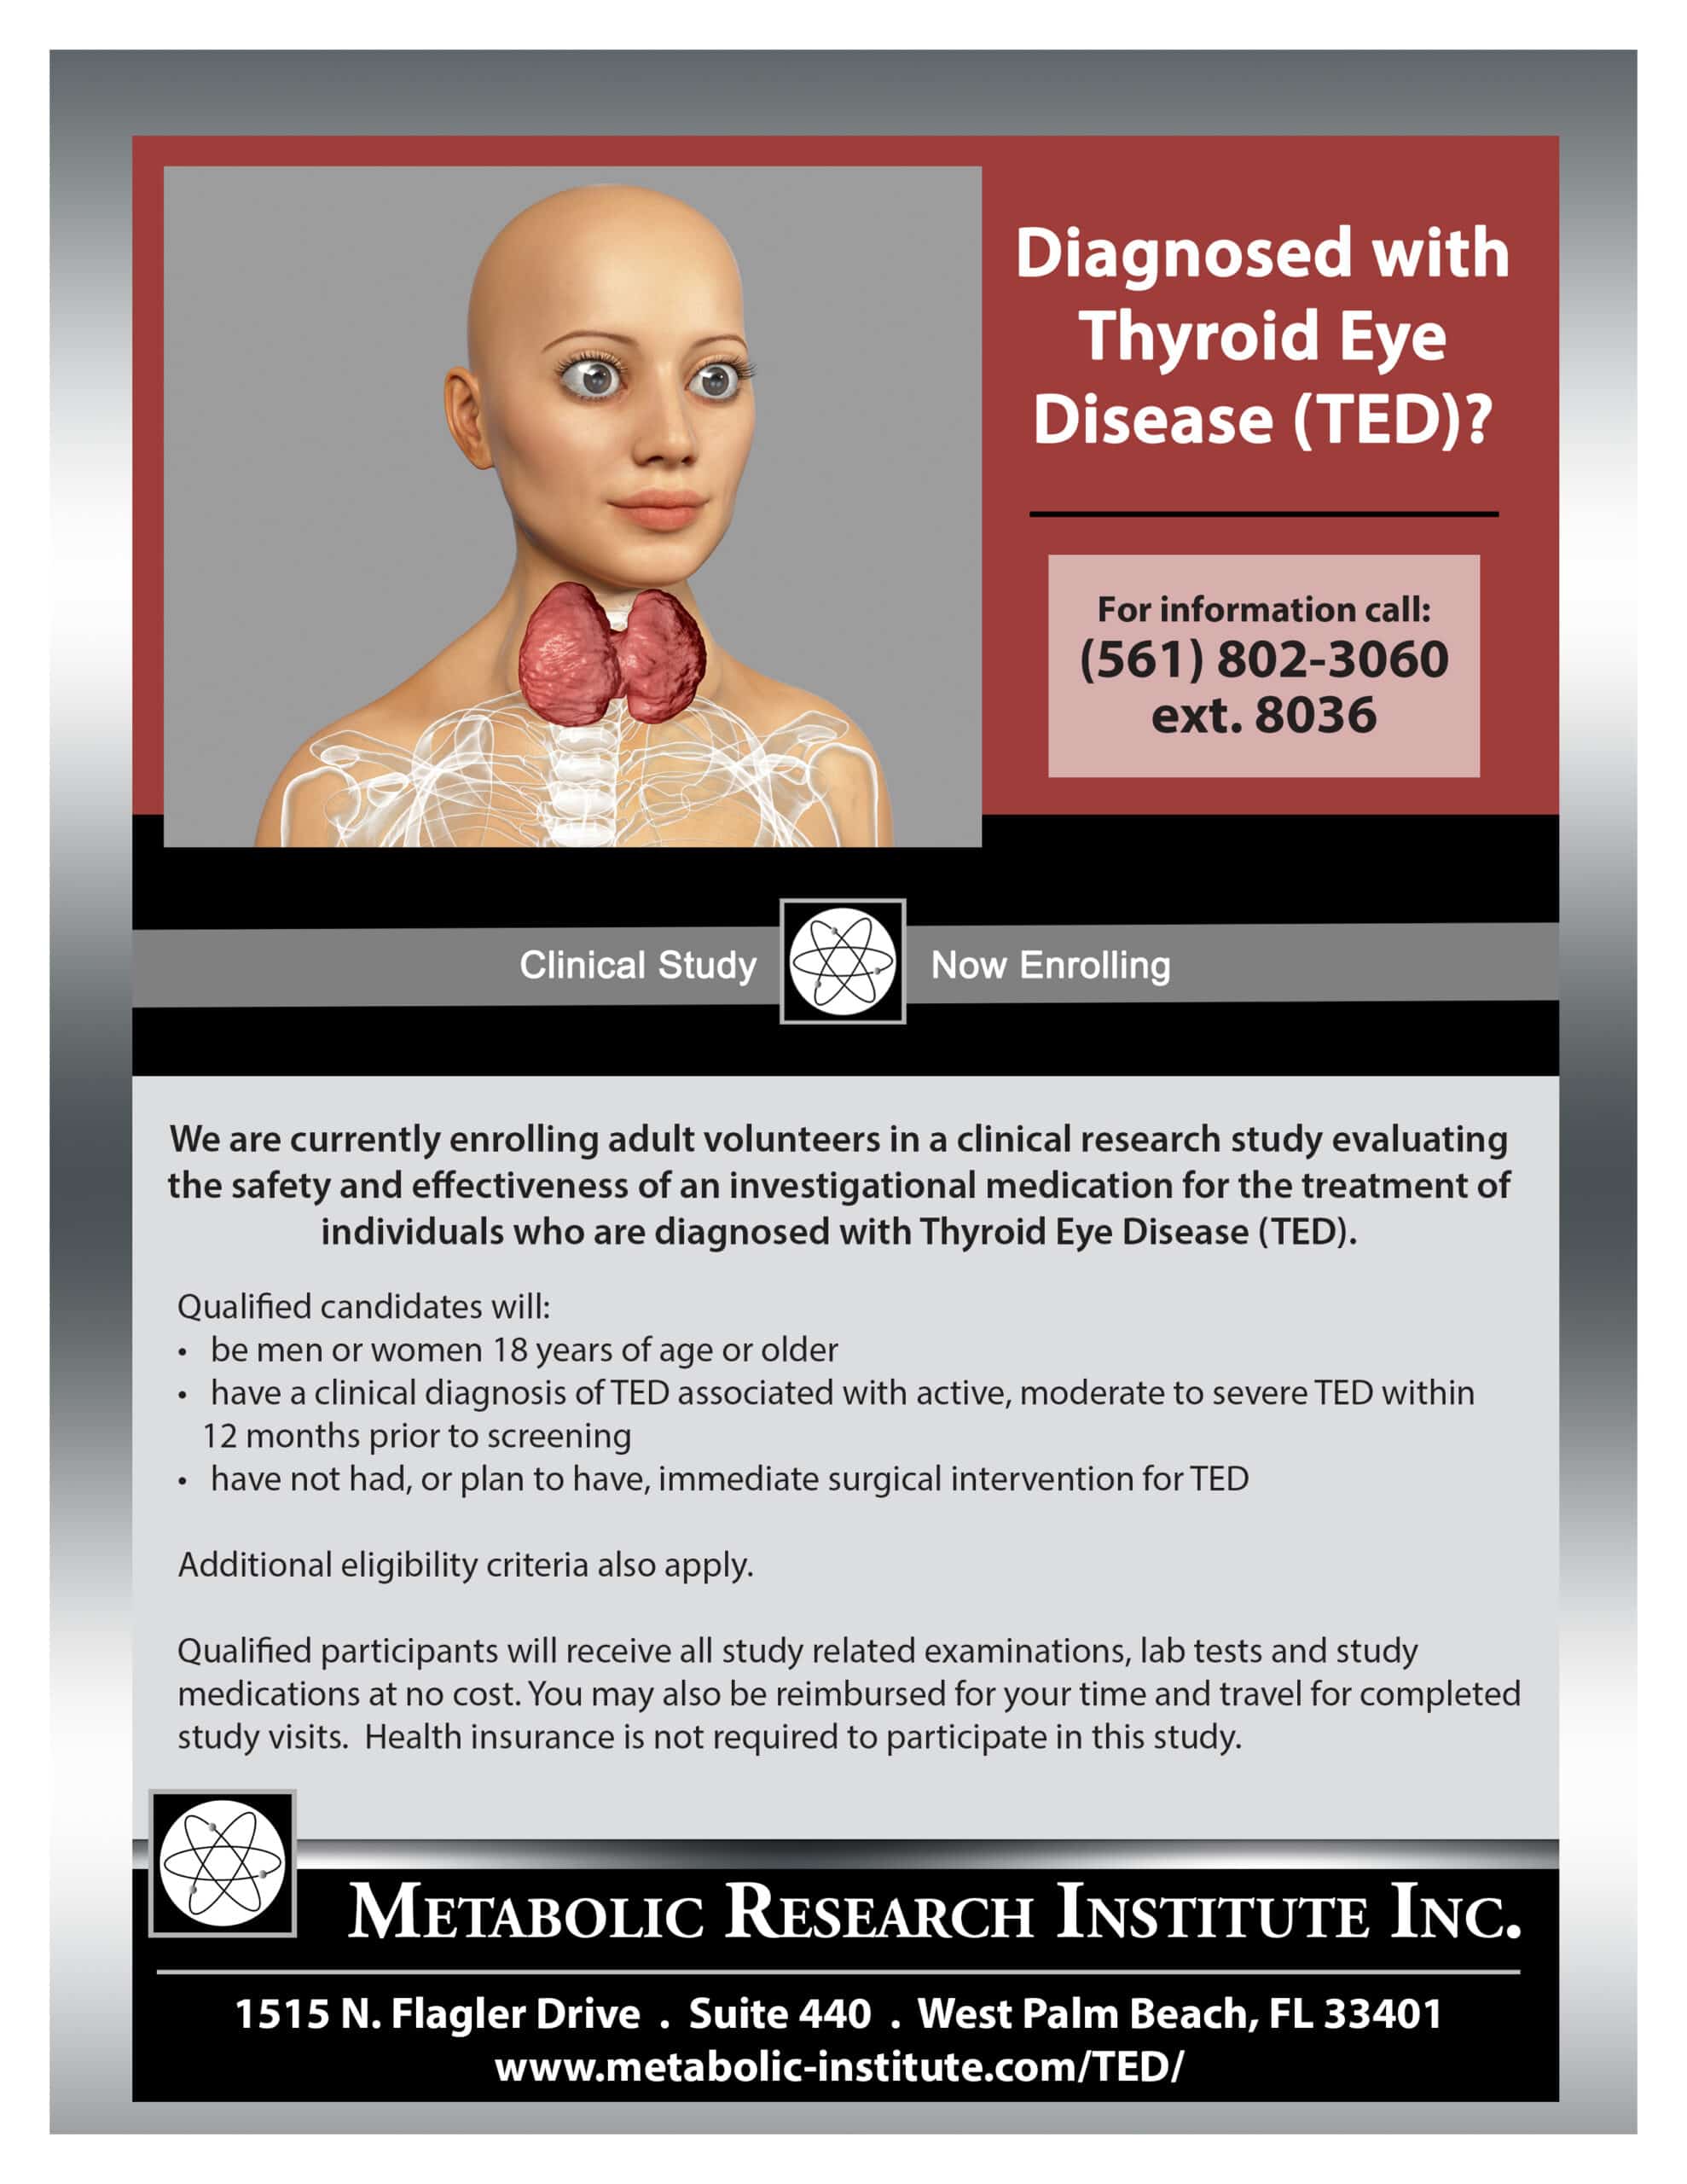 Thyroid Eye Disease (TED) Clinical Study<br />
Enrolling now in West Palm Beach, FL